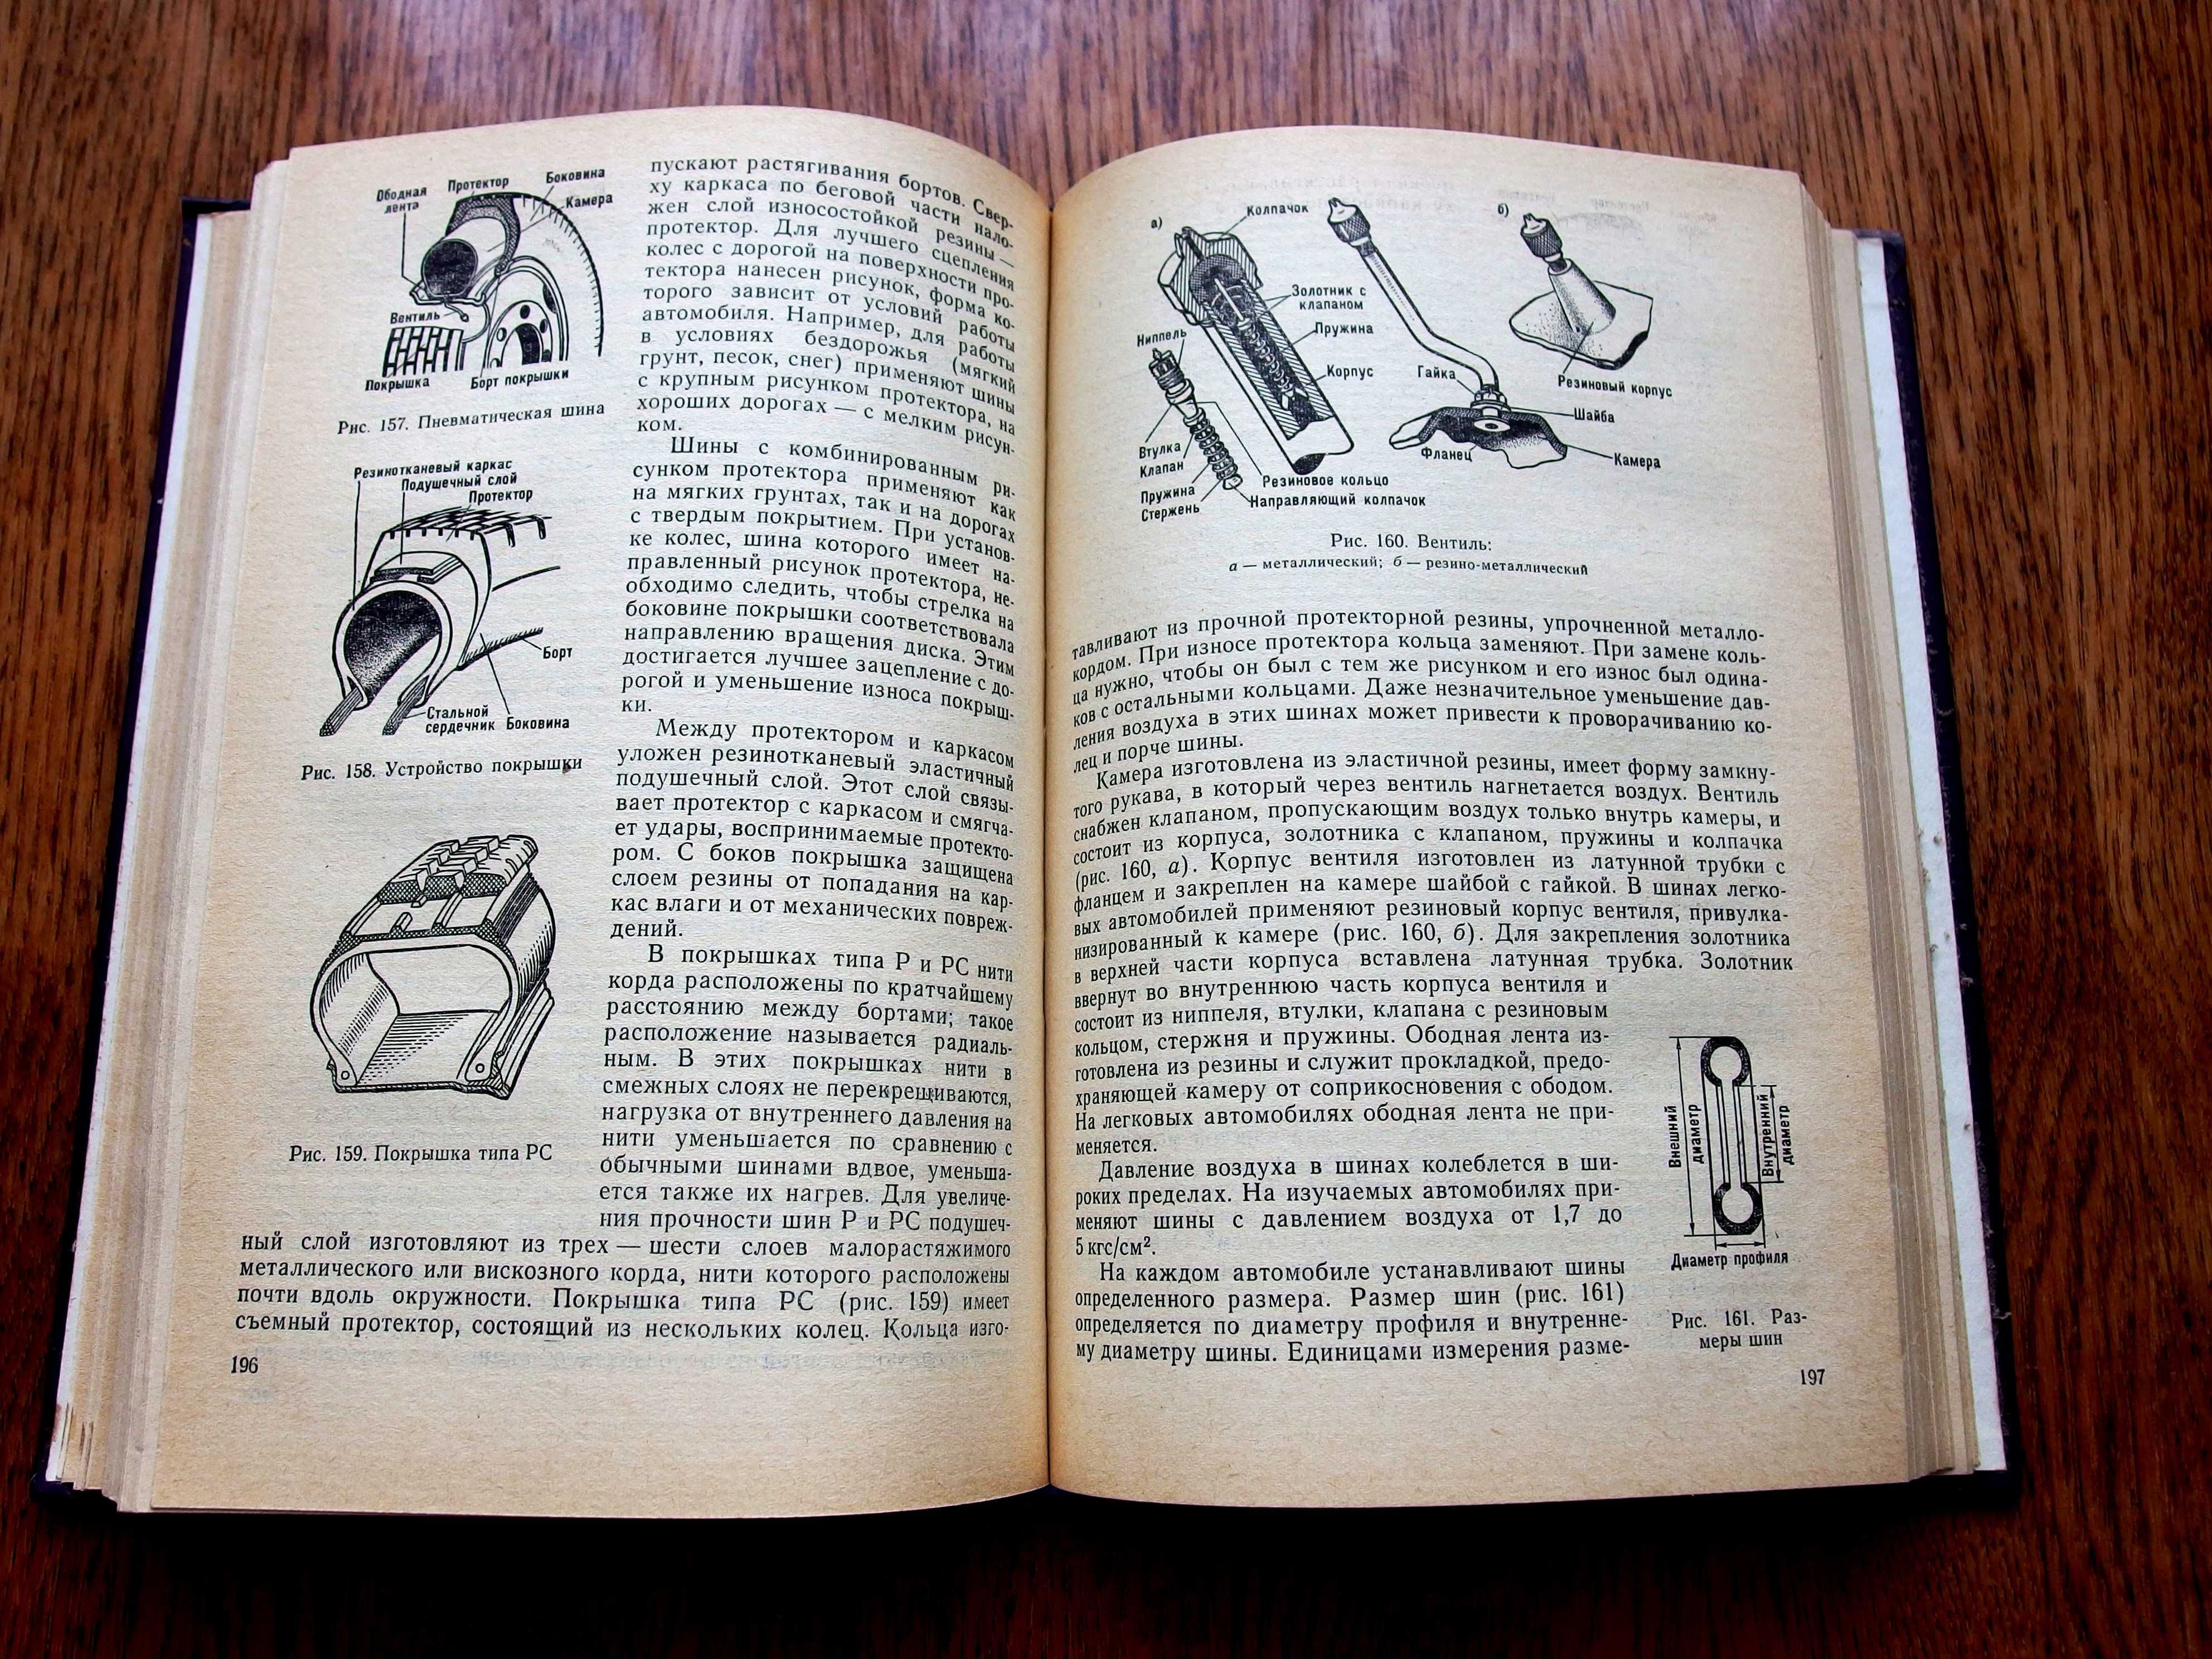 "Автомобиль: Учебник водителя третьего класса", 1975 год